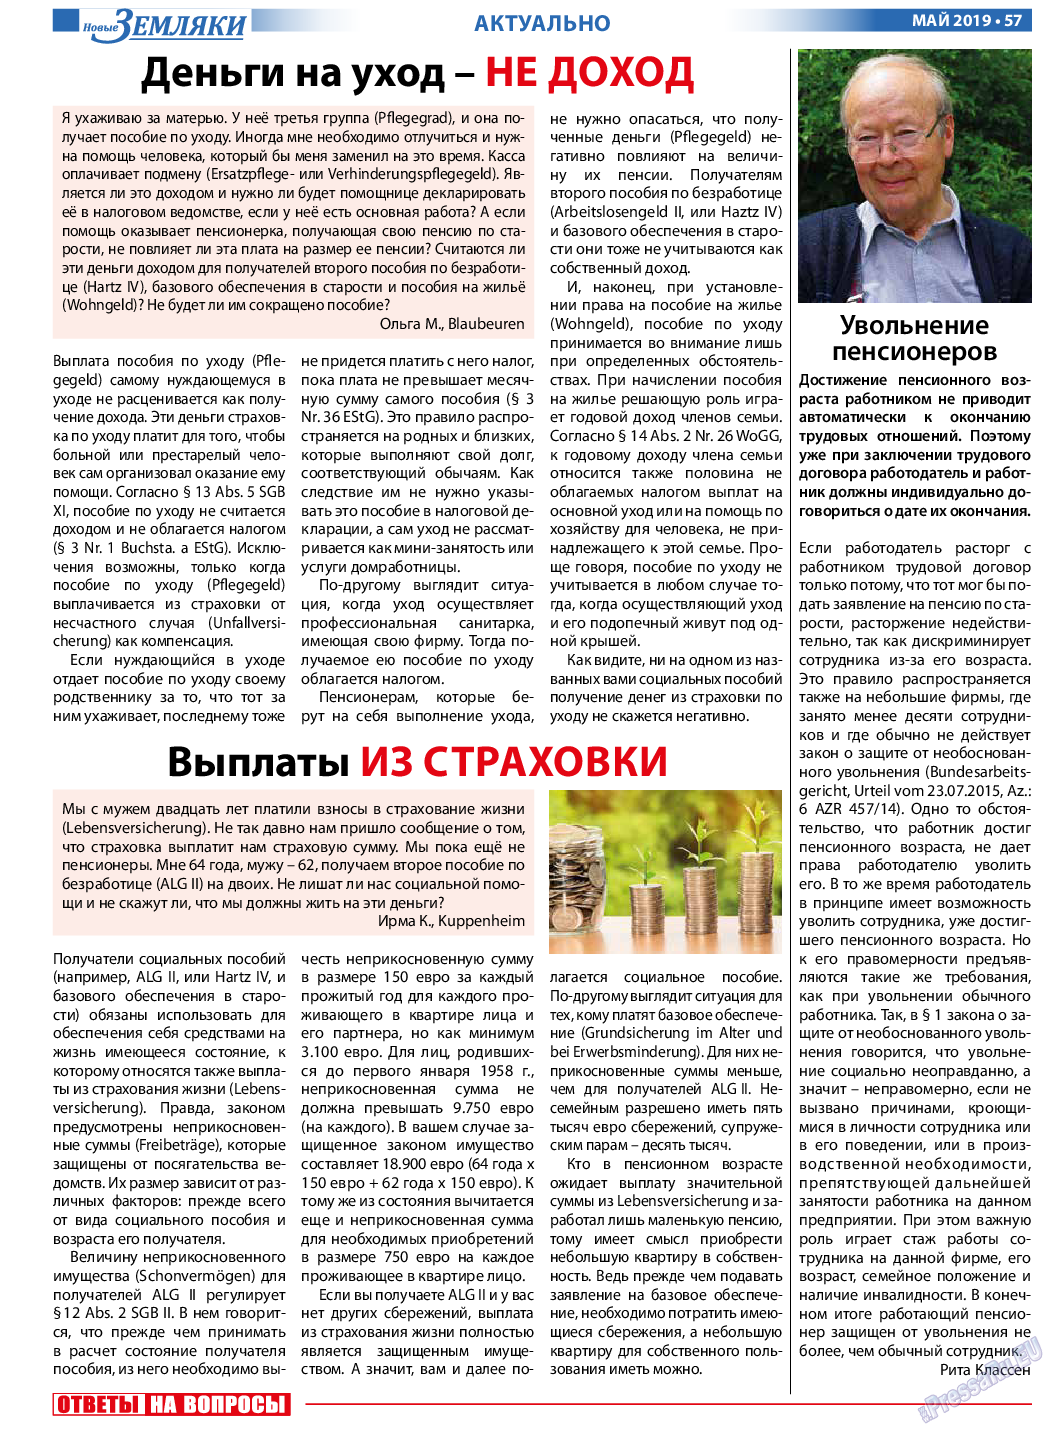 Новые Земляки, газета. 2019 №5 стр.57